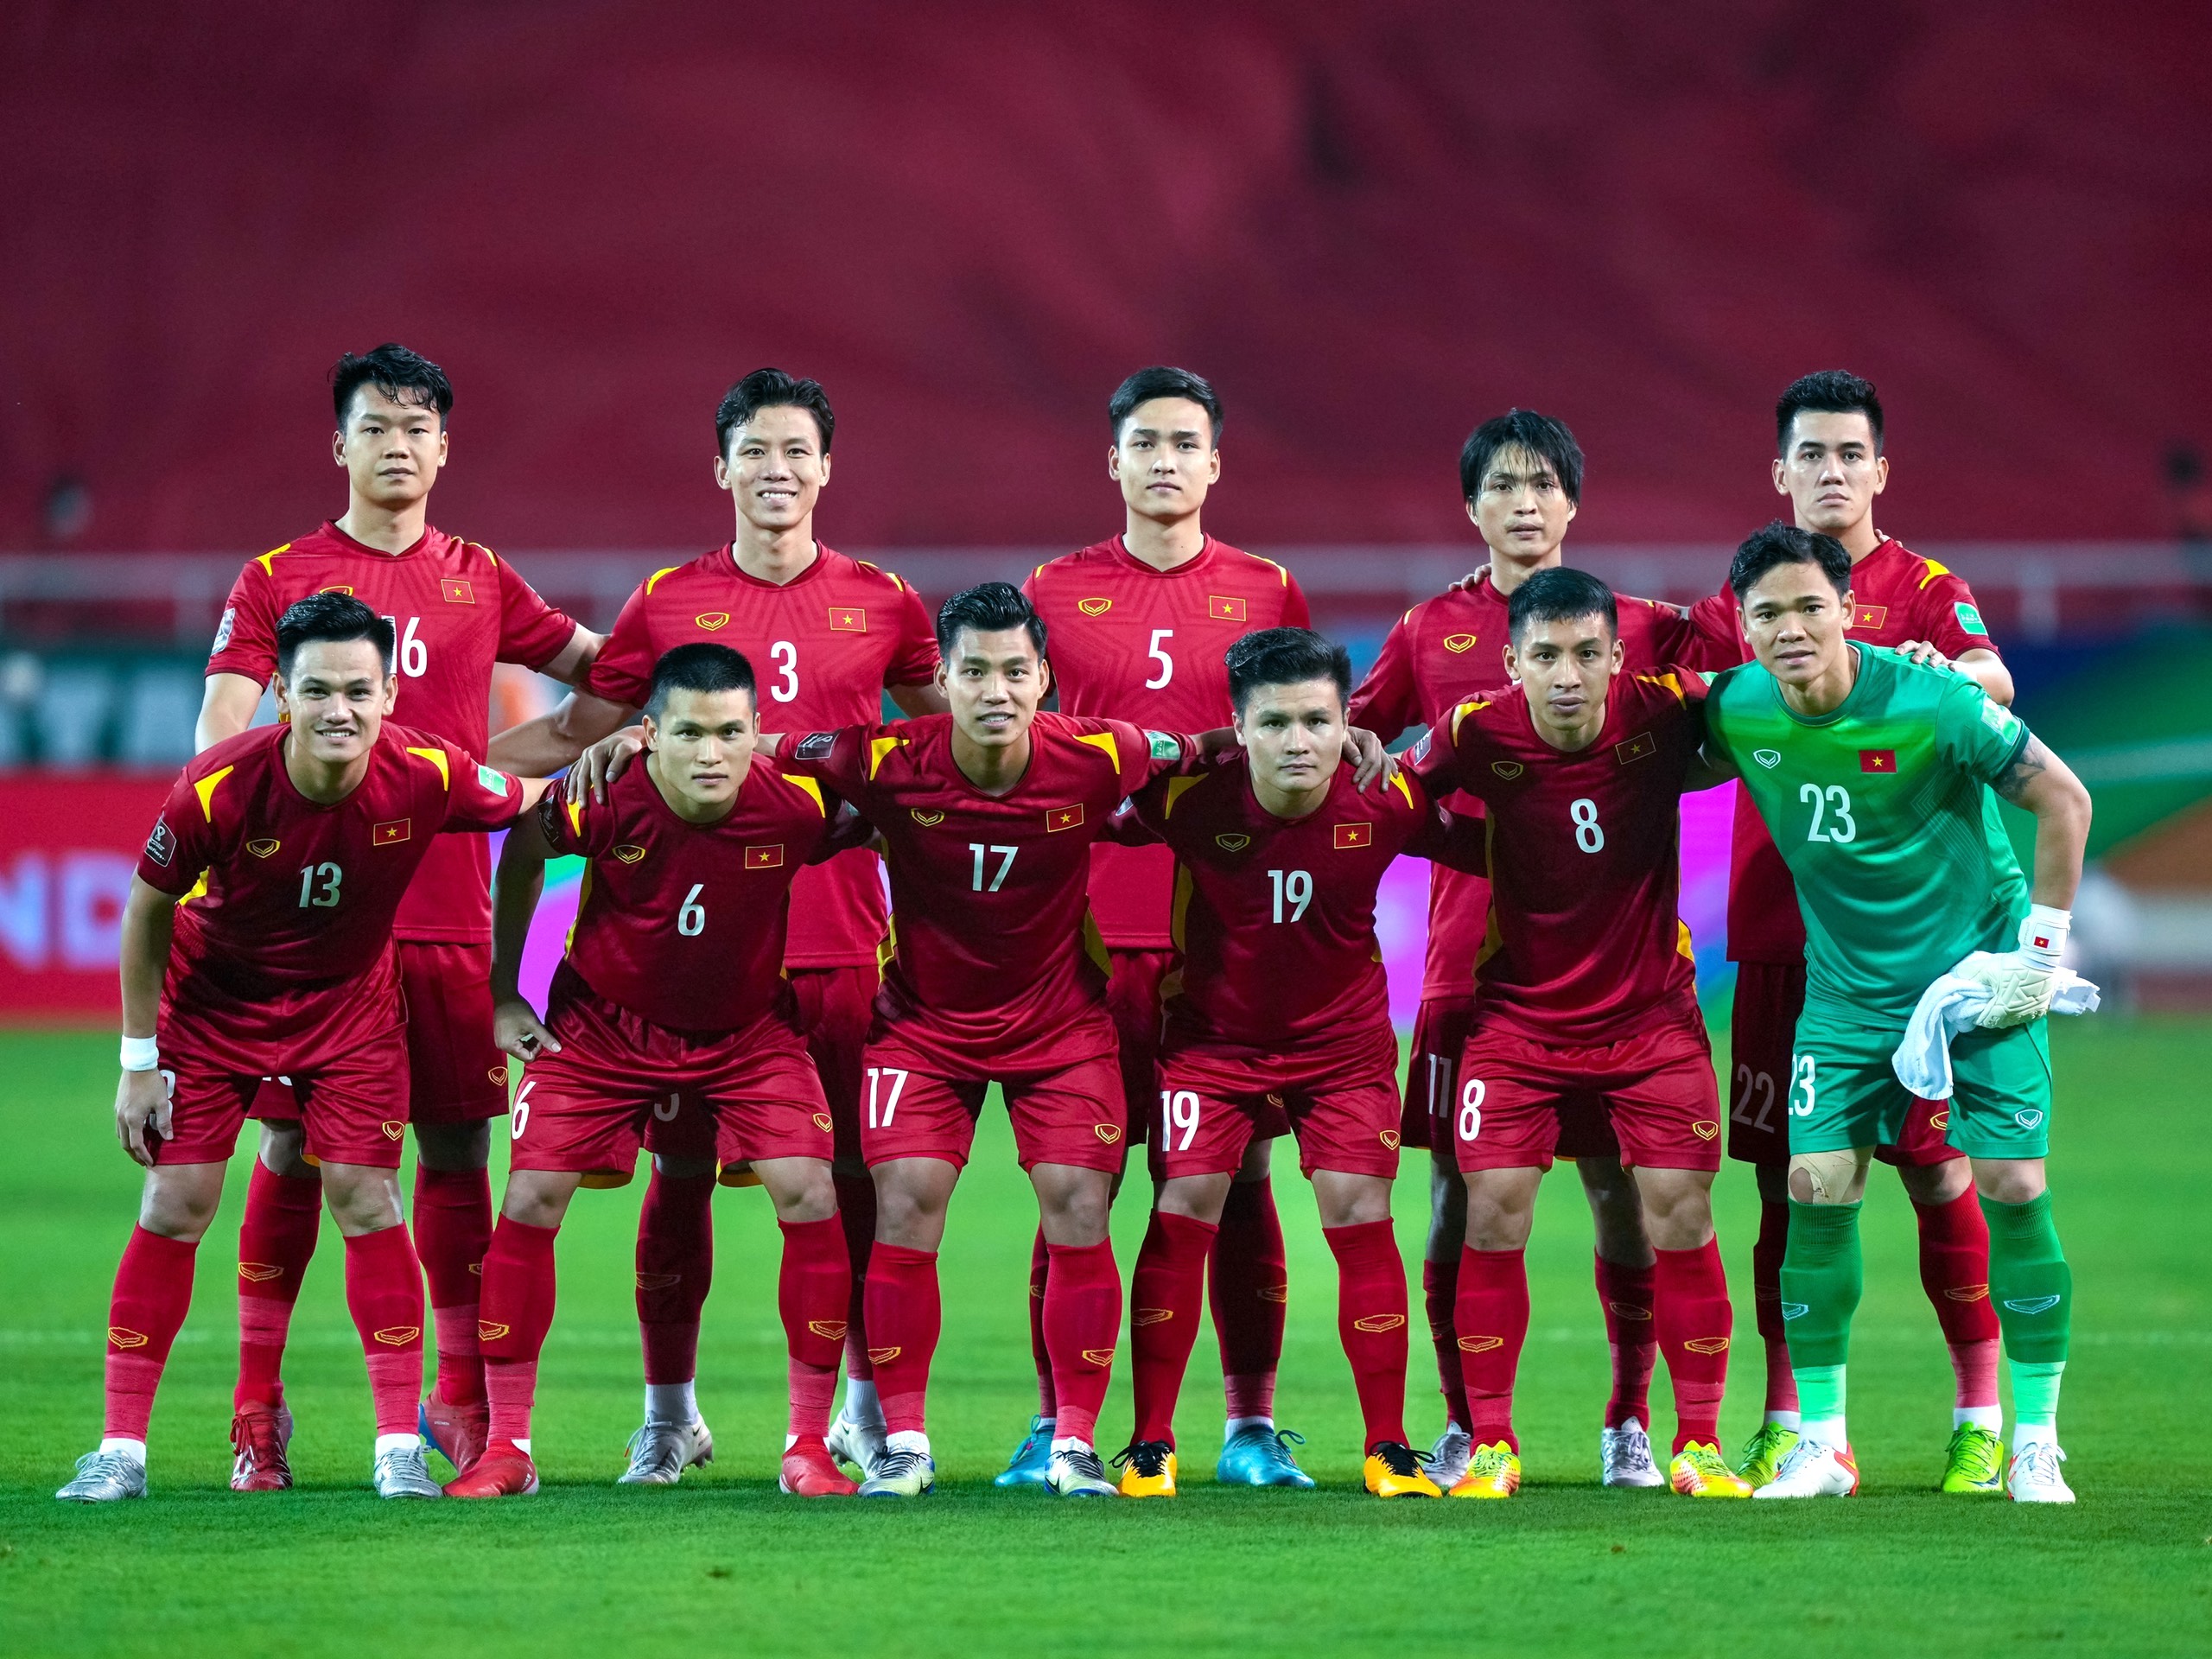 Các cầu thủ tuyển Việt Nam đã đánh bại Thái Lan tại AFF Cup và đánh dấu một chiến thắng lịch sử trong lịch sử bóng đá Việt Nam. Hãy cùng xem lại những khoảnh khắc đá bóng đẹp mắt của họ.